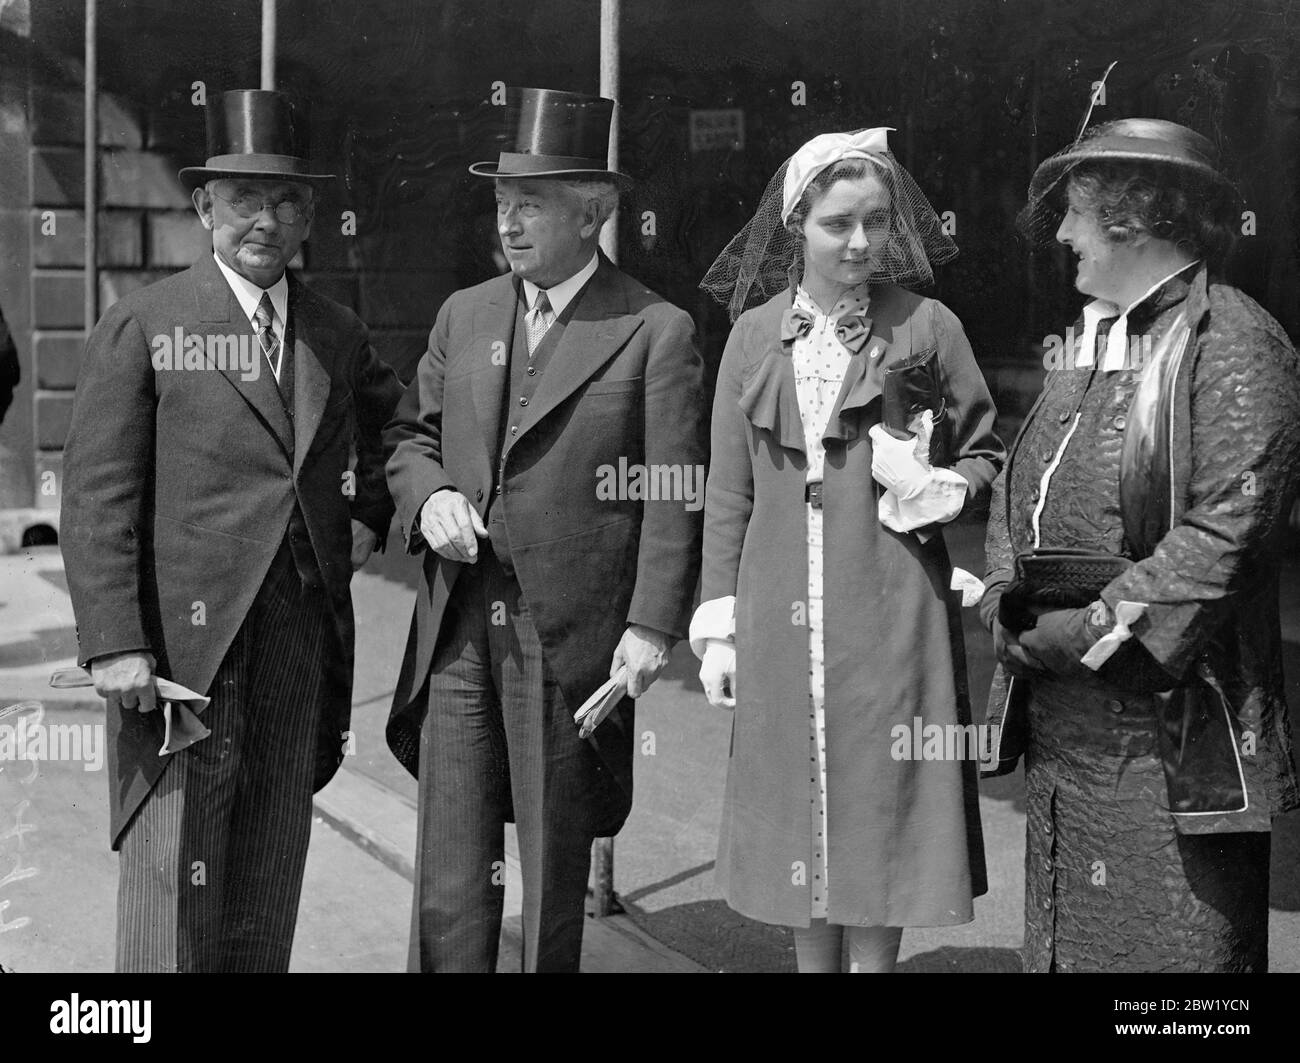 La liberté de la ville de Londres a été présentée au premier ministre australien, J A Lyons, qui a droit honorifique, et au Guildhall, M J Savage, premier ministre néo-zélandais. Séances photo, M. J a Lyons, Premier ministre australien, M. MJ Savage, Premier ministre néo-zélandais (portant des lunettes), Mme Lyons et Mlle Sheila Lyons, fille du Premier ministre australien et de sa femme, au Guildhall. 14 juin 1937 Banque D'Images